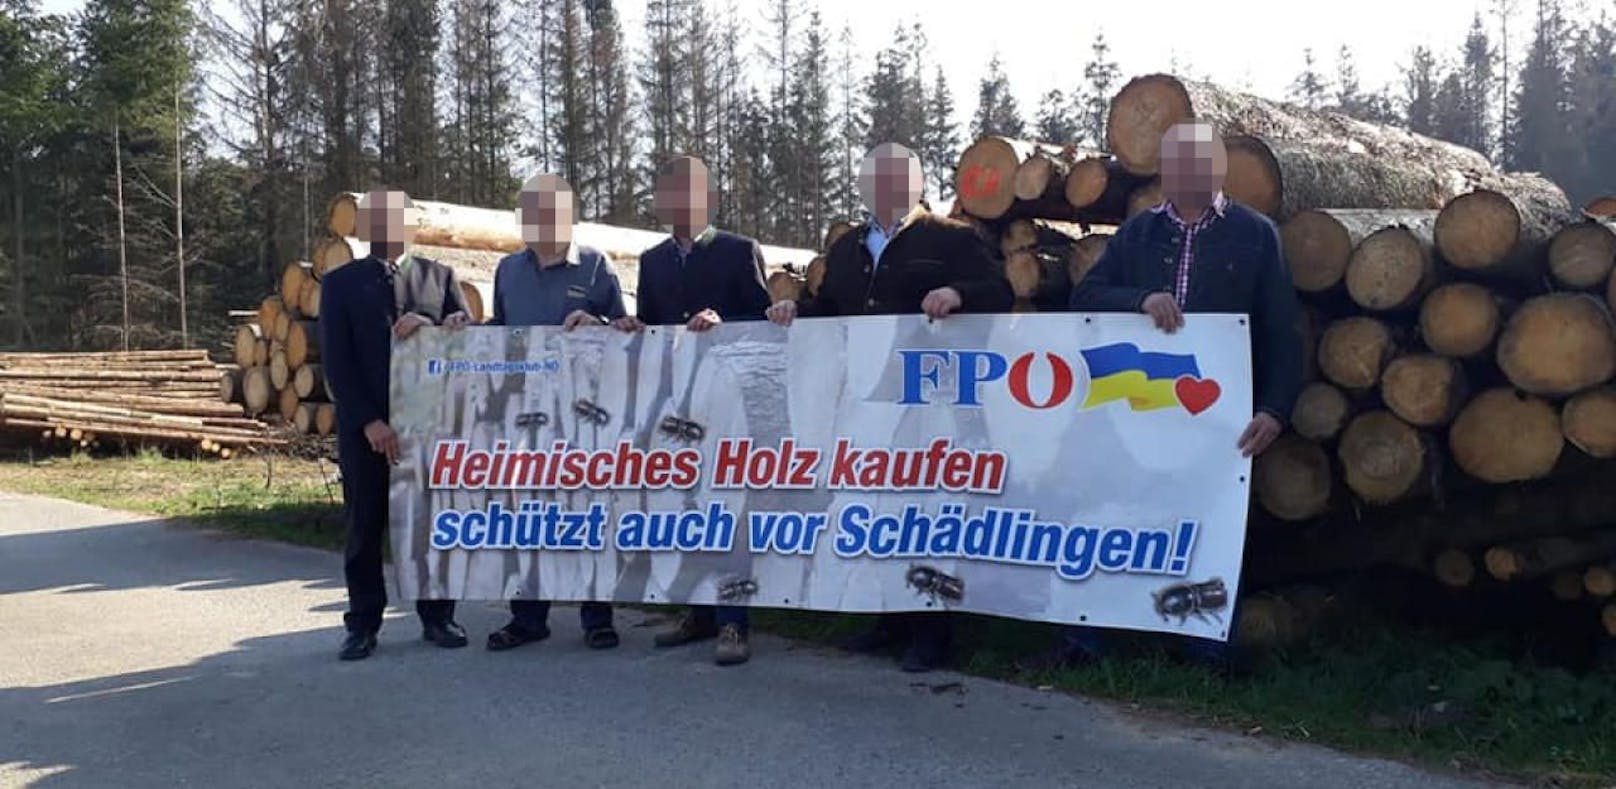 VP-Bürgermeister kritisiert FP-Plakat: "Subtile Hetze"